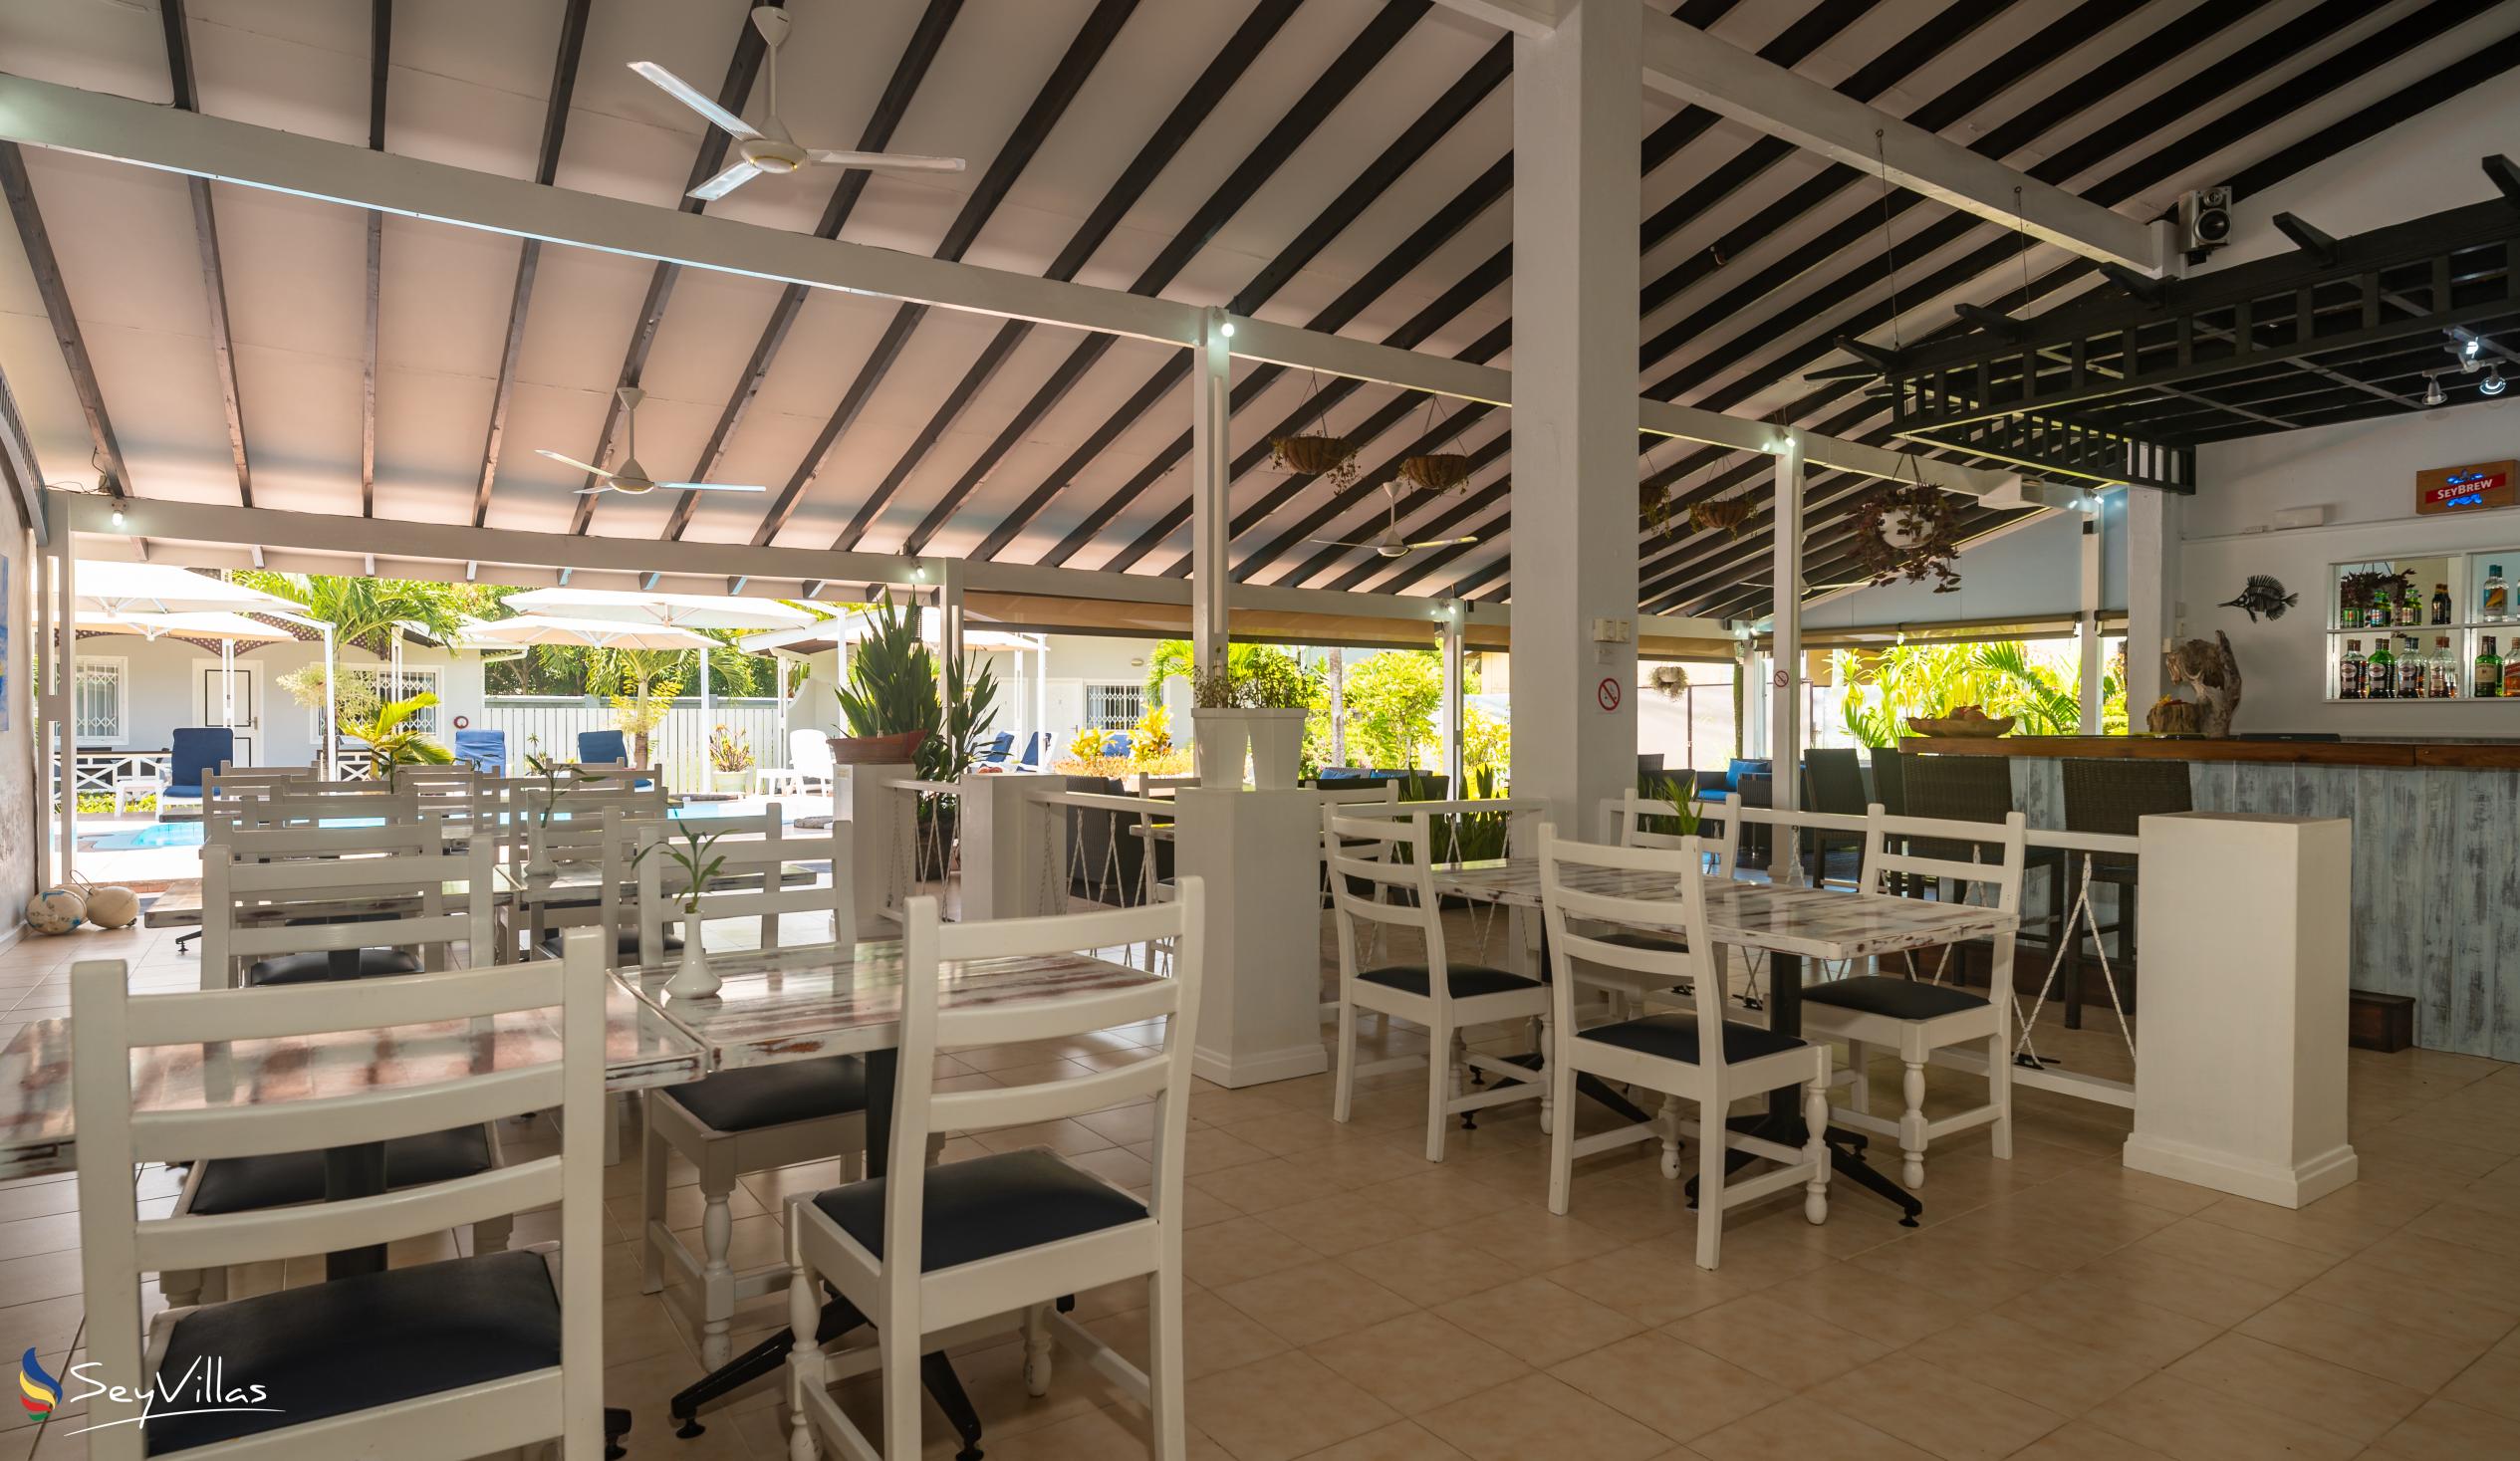 Photo 42: Hotel La Roussette - Indoor area - Mahé (Seychelles)